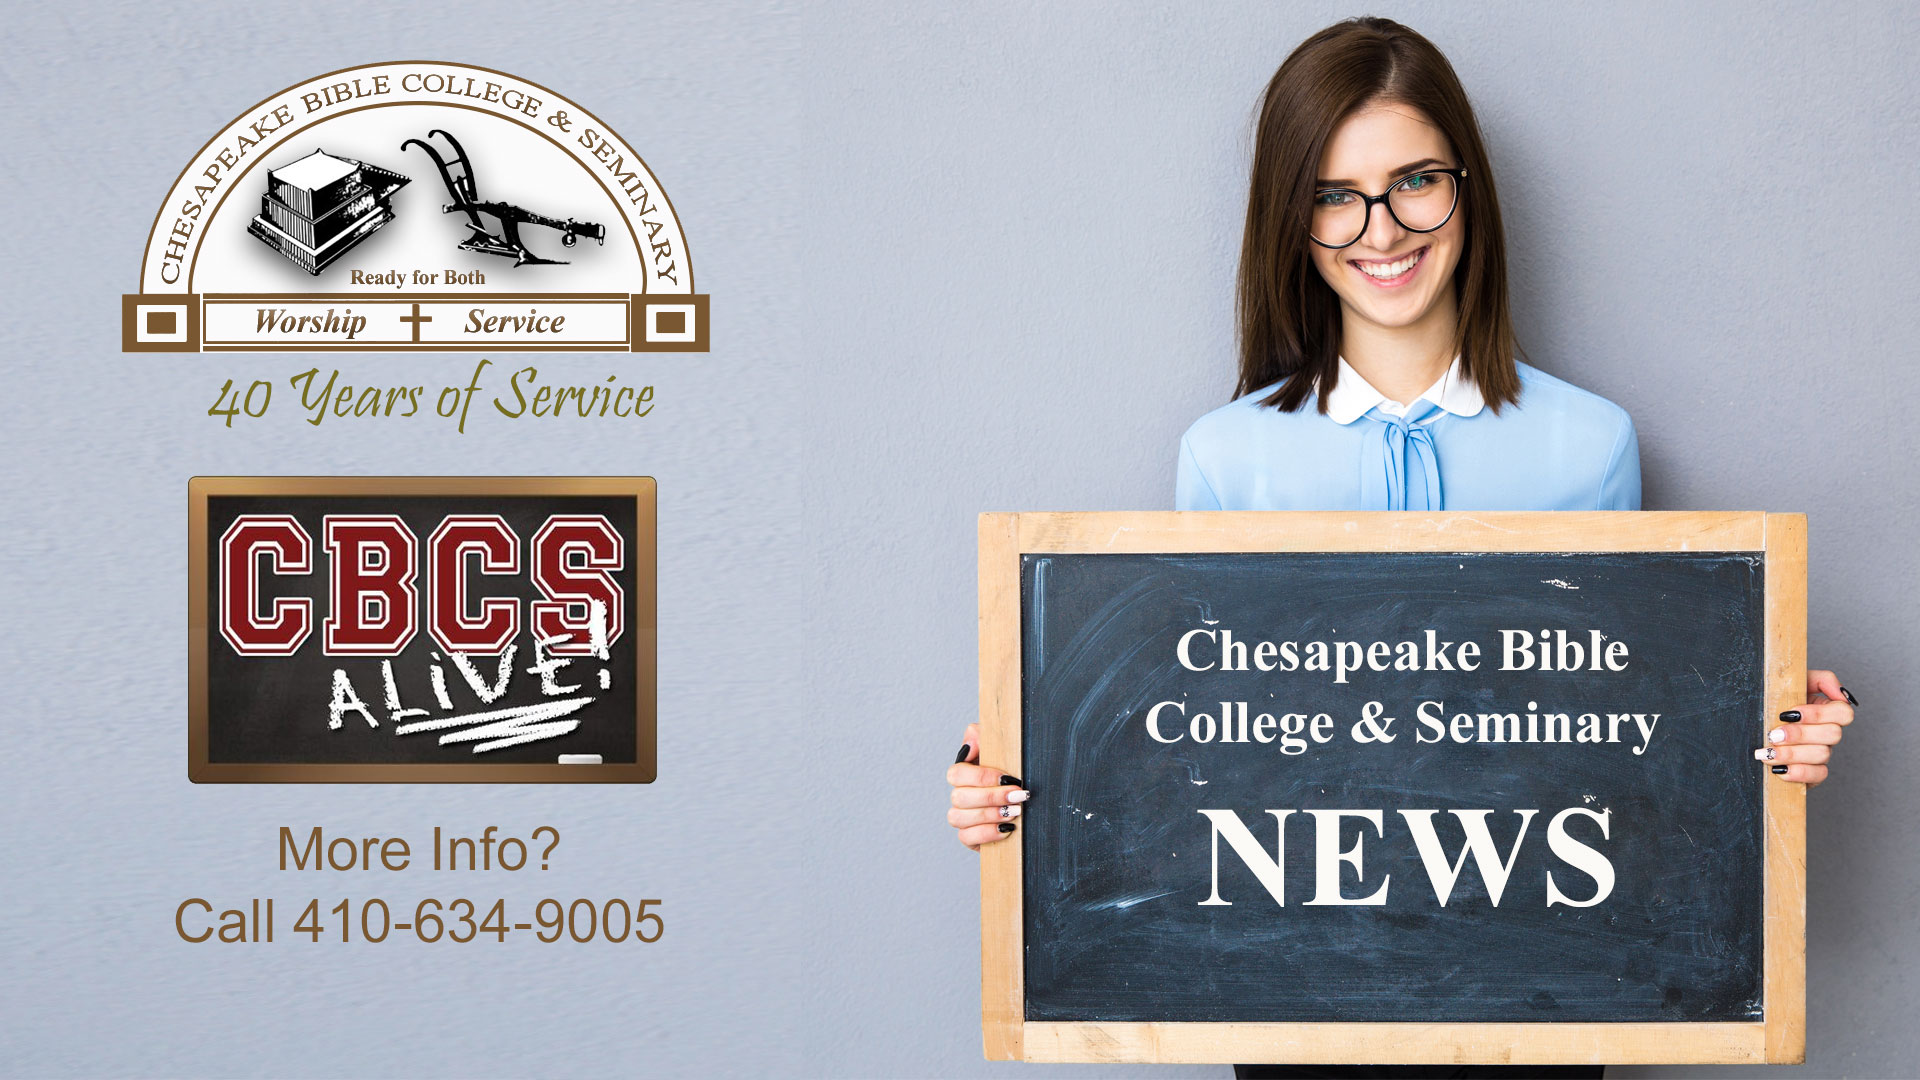 Chesapeake Bible College & Seminary - News